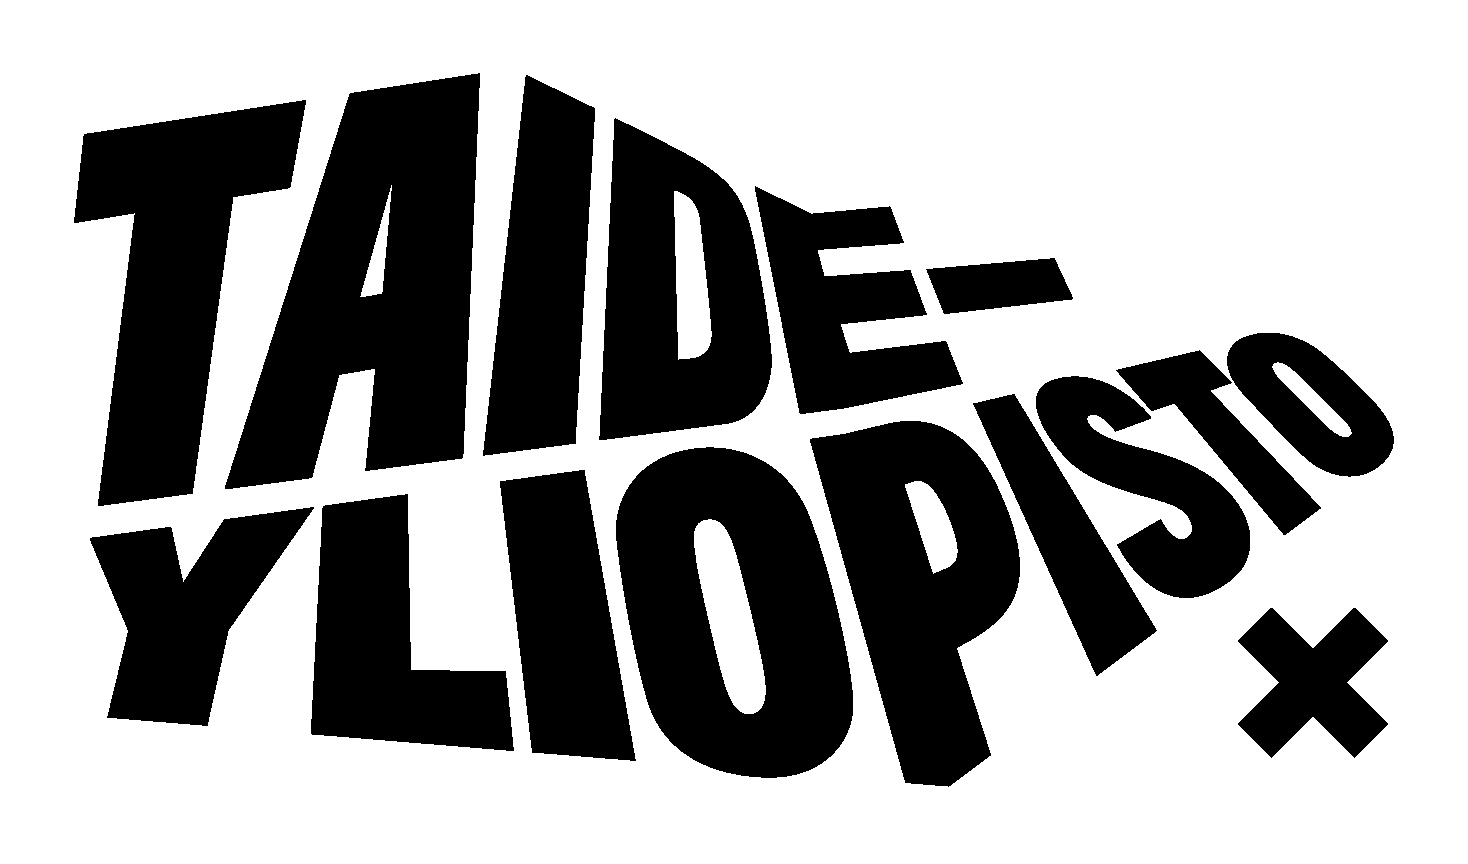 Taideyliopiston logo